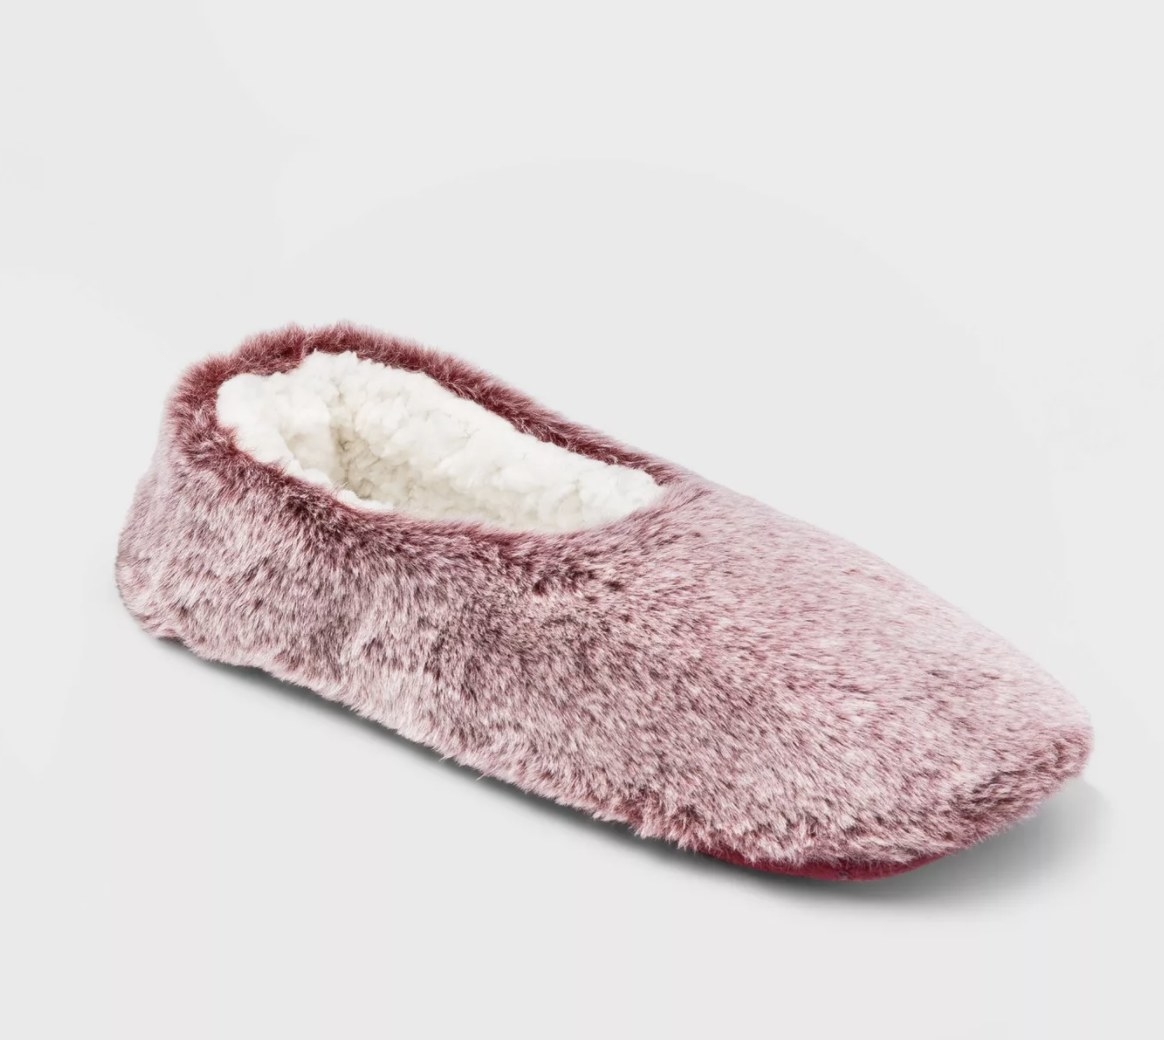 The burgundy slipper socks have a plush white inside